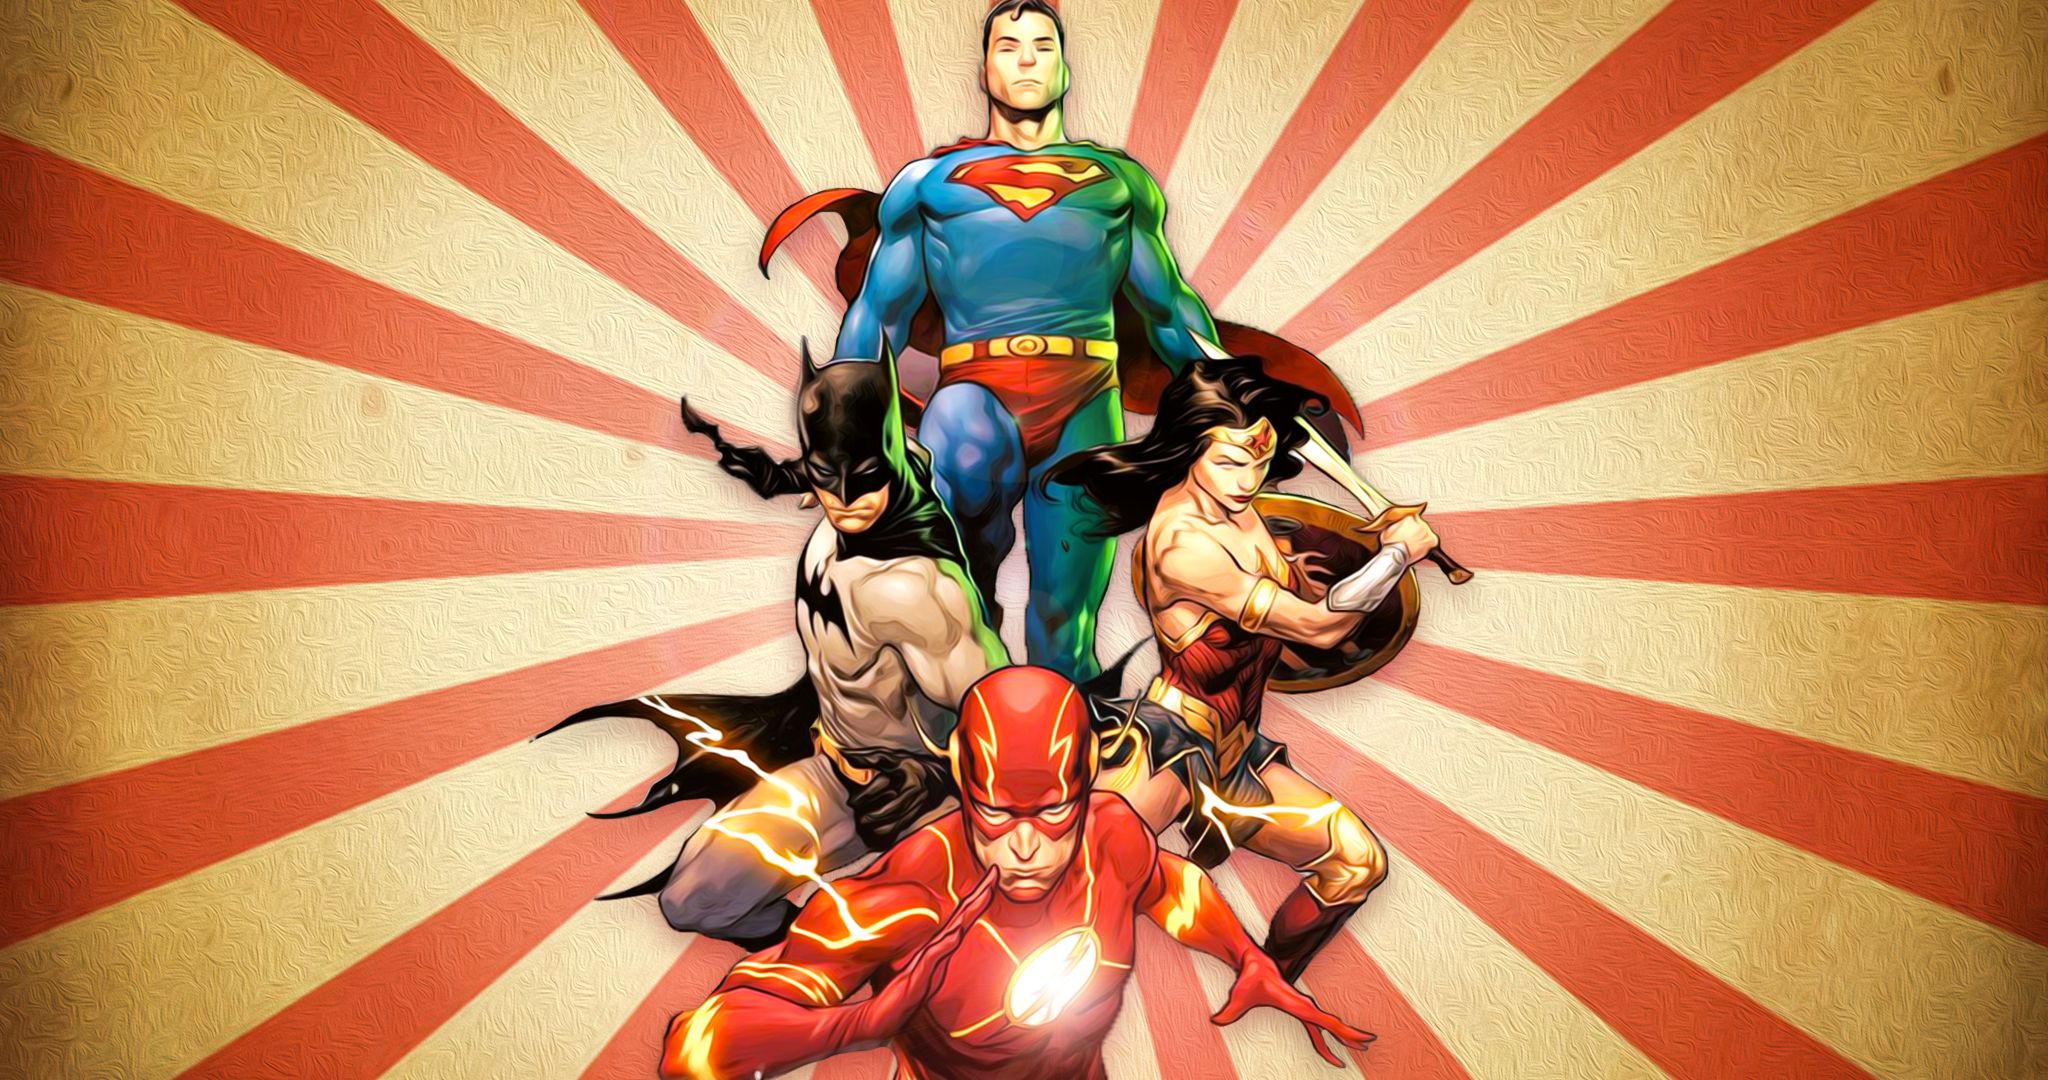 DC superman batman wonder woman flash